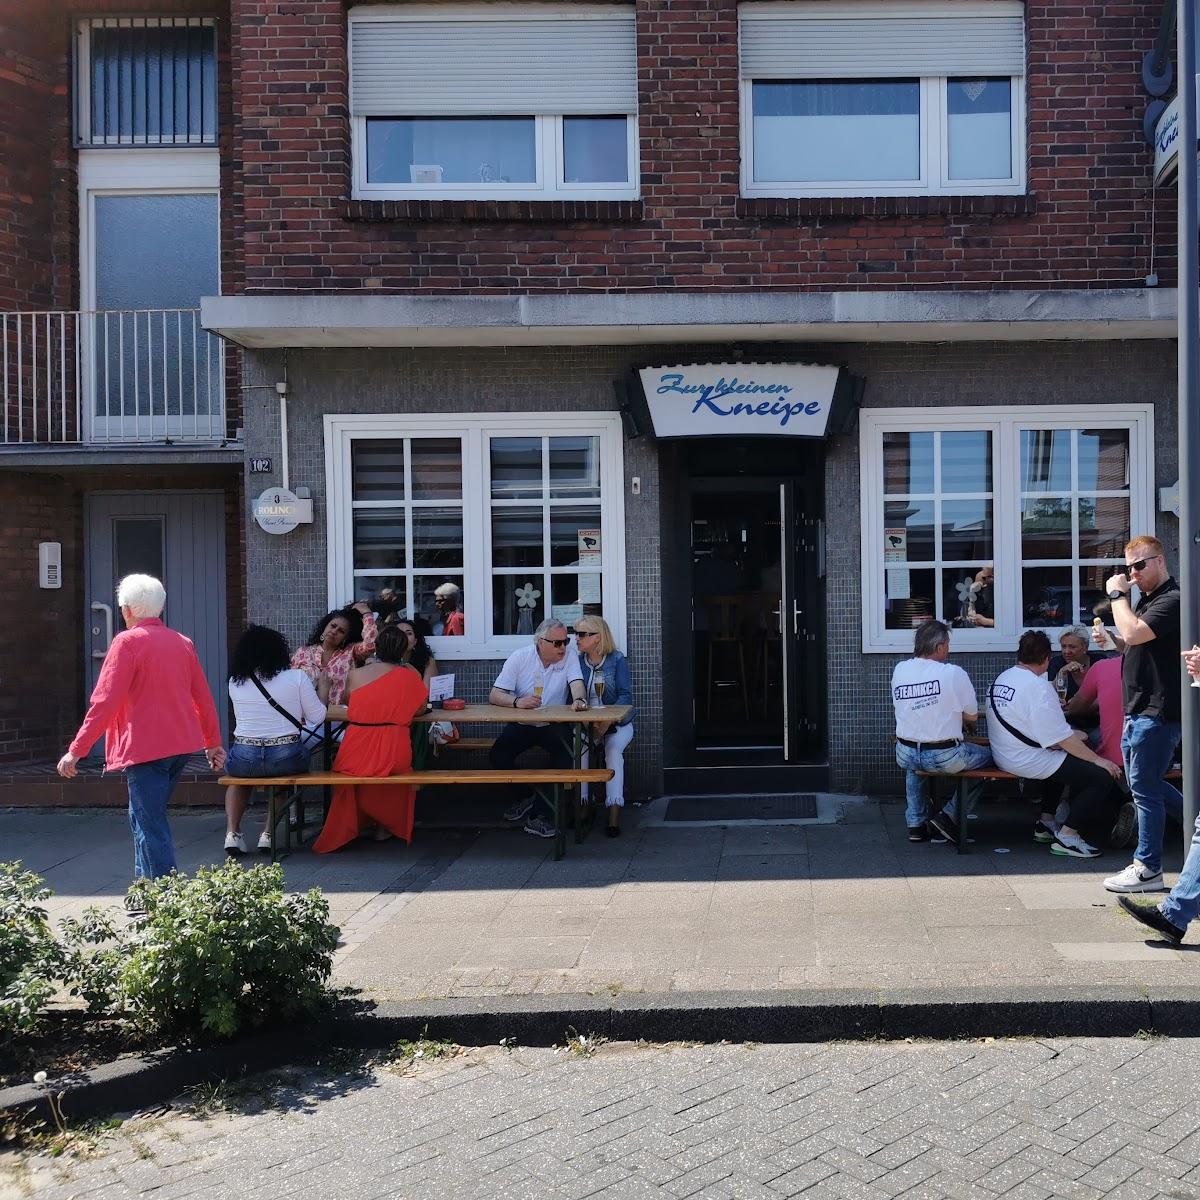 Restaurant "Zur Kleinen Kneipe" in Nordhorn